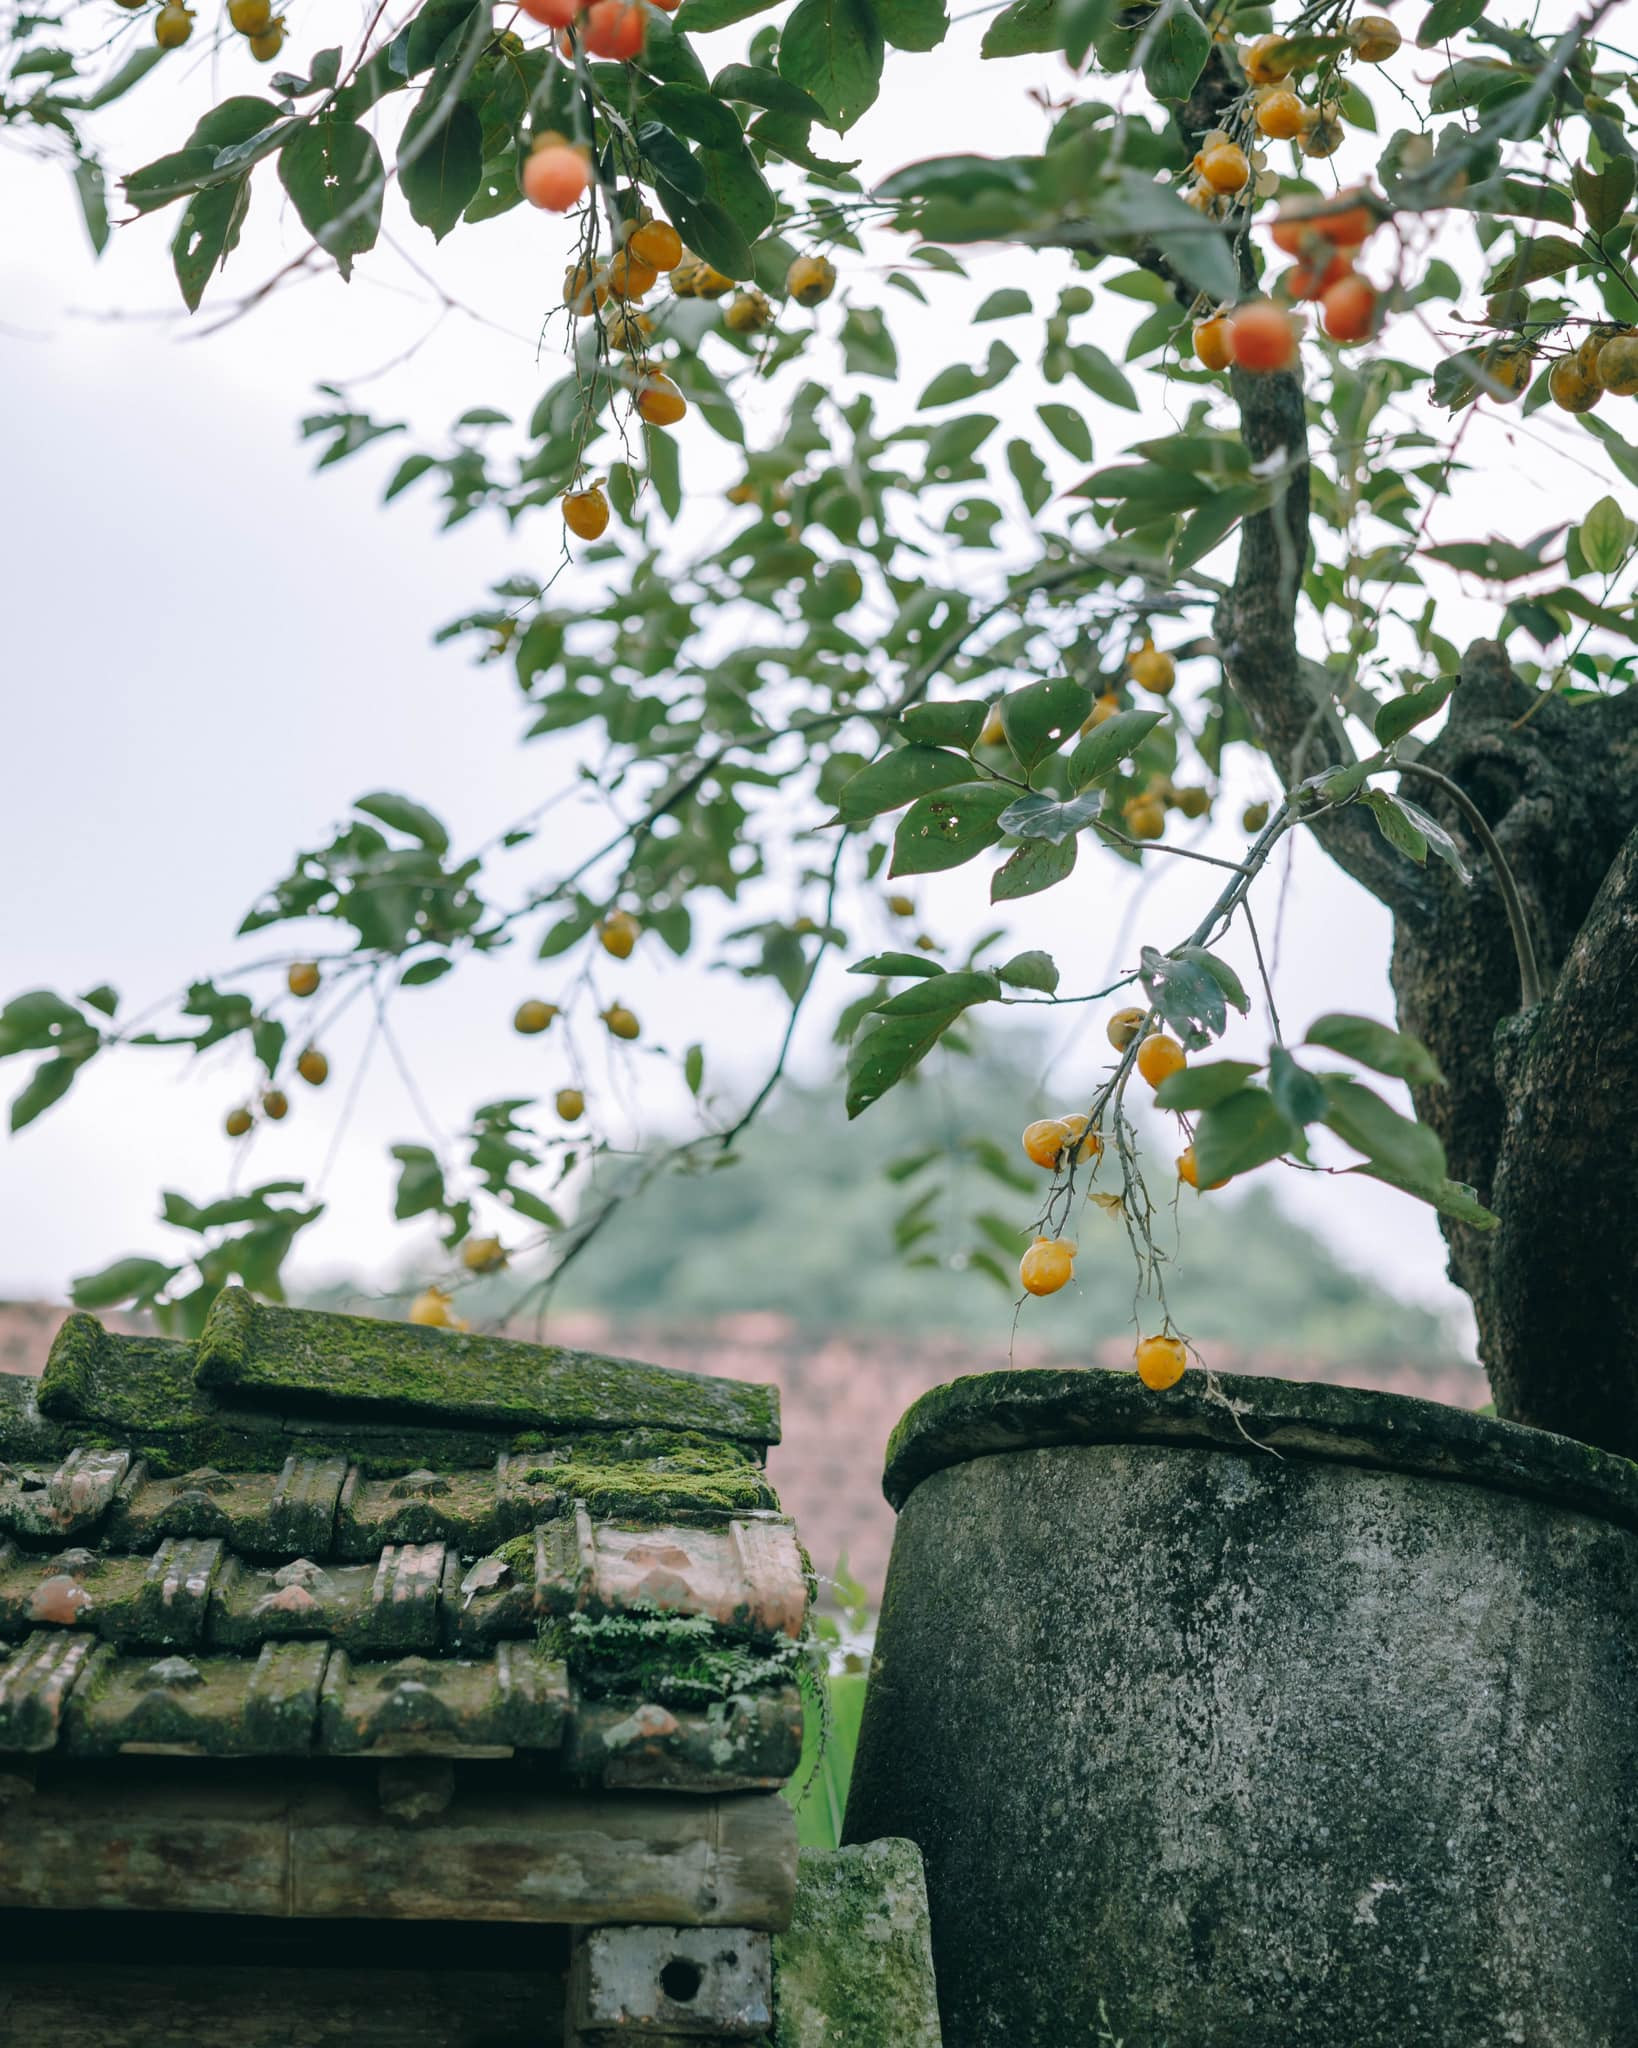 Bay ngàn km tìm cây hồng cổ nổi nhất Ninh Bình, du khách sốc thấy quả giả treo lủng lẳng-2